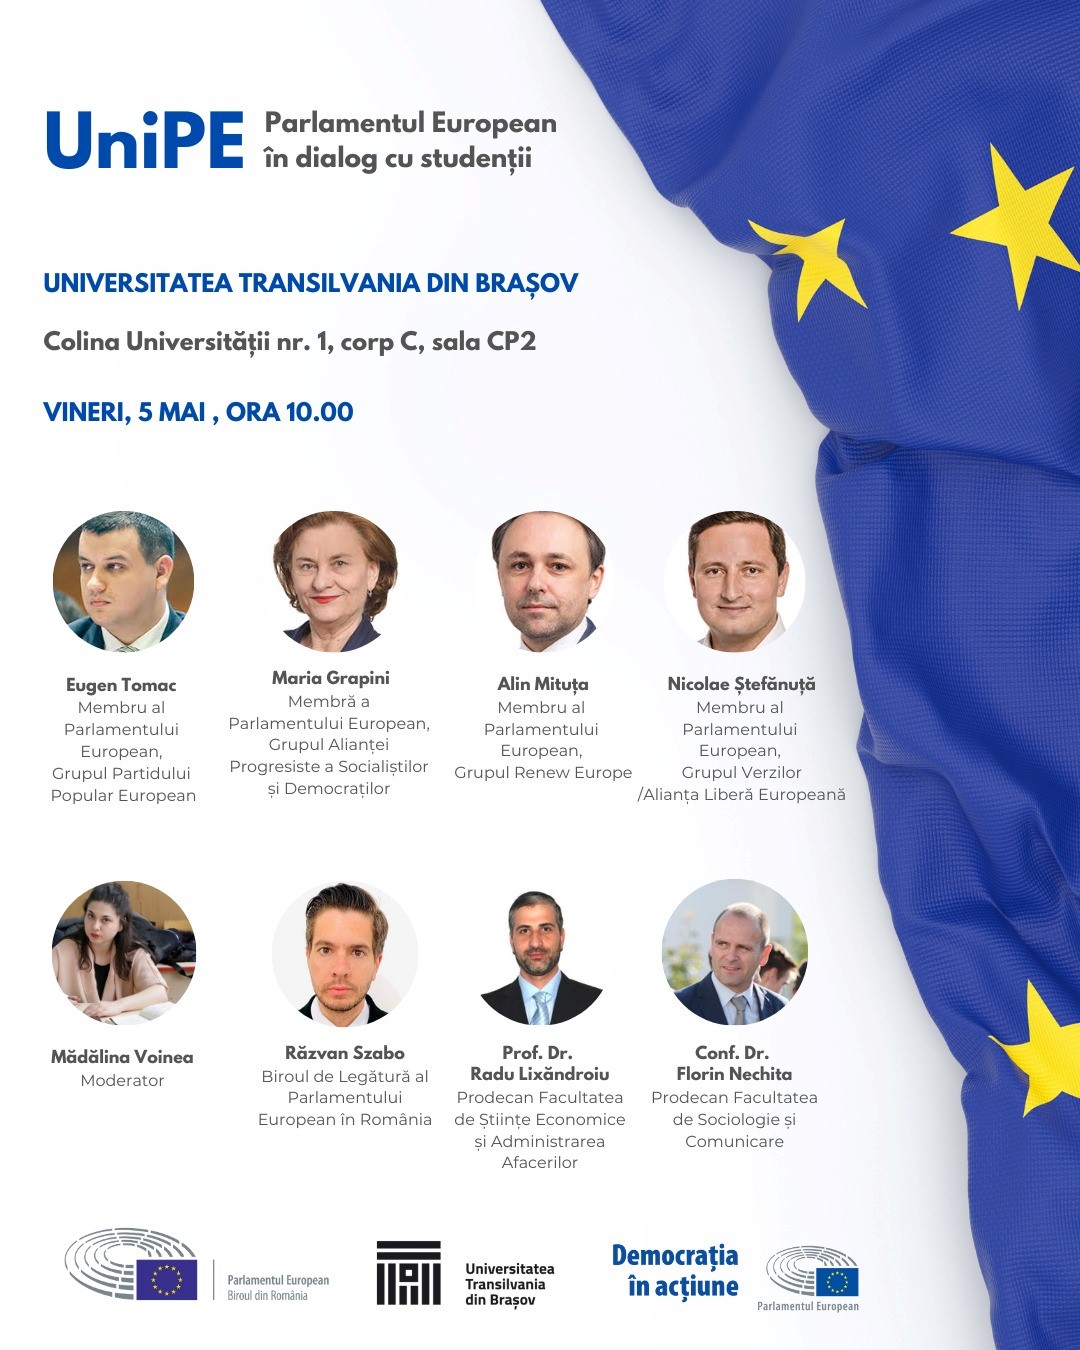 UniPE - Parlamentul European în dialog cu studenții - Brașov